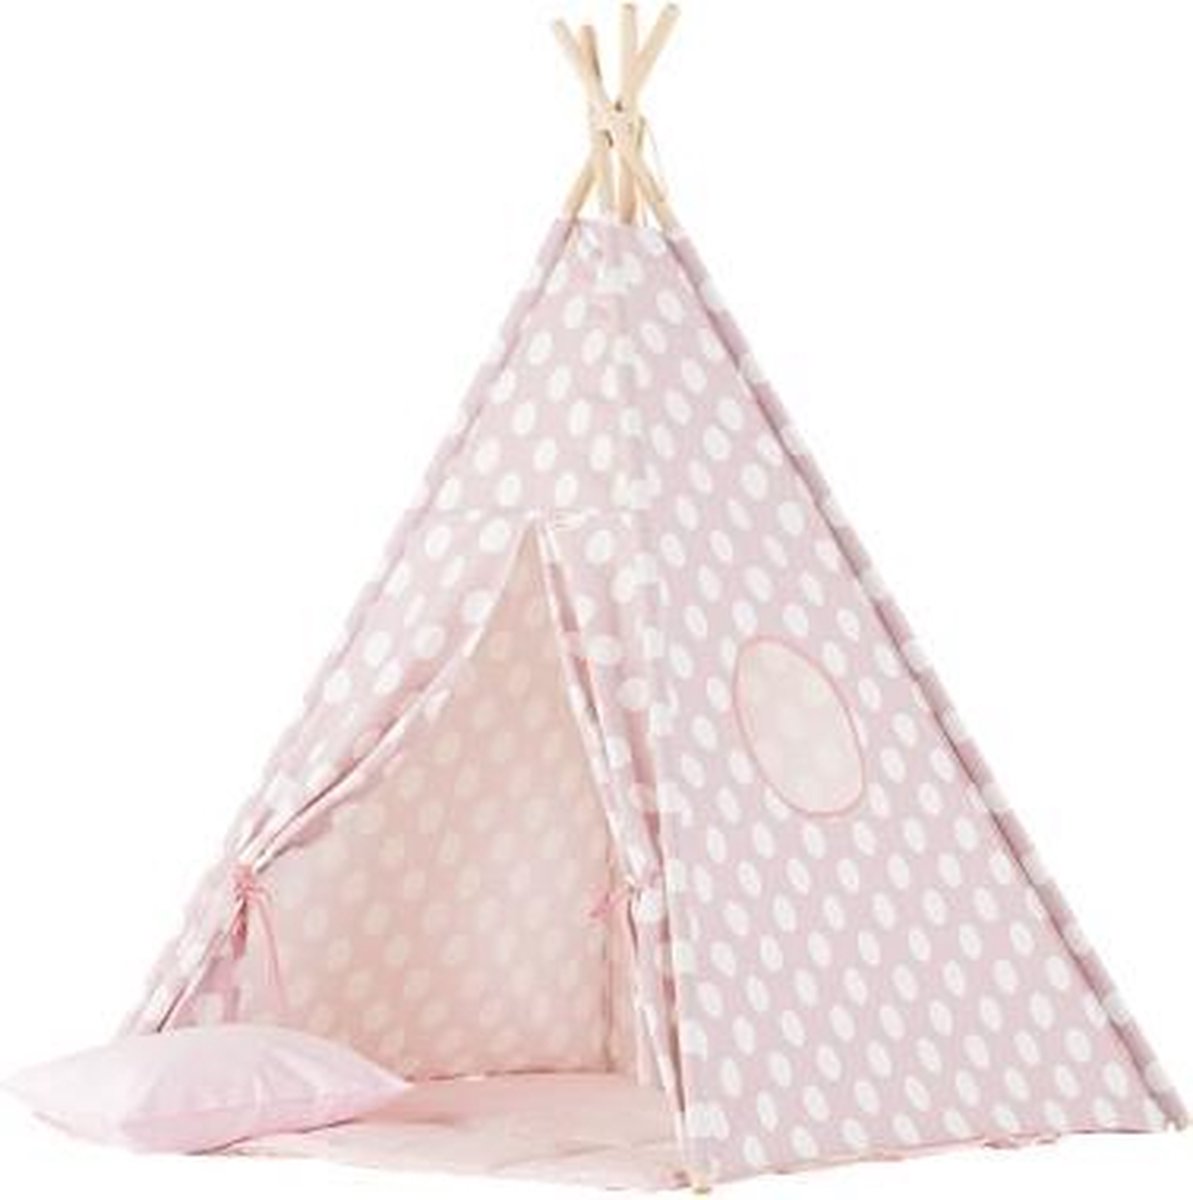 Ook sap Articulatie Tipi Tent / Speeltent Kinderkamer Pink Dots - Speeltent voor Kinderen -  Kindertent -... | bol.com